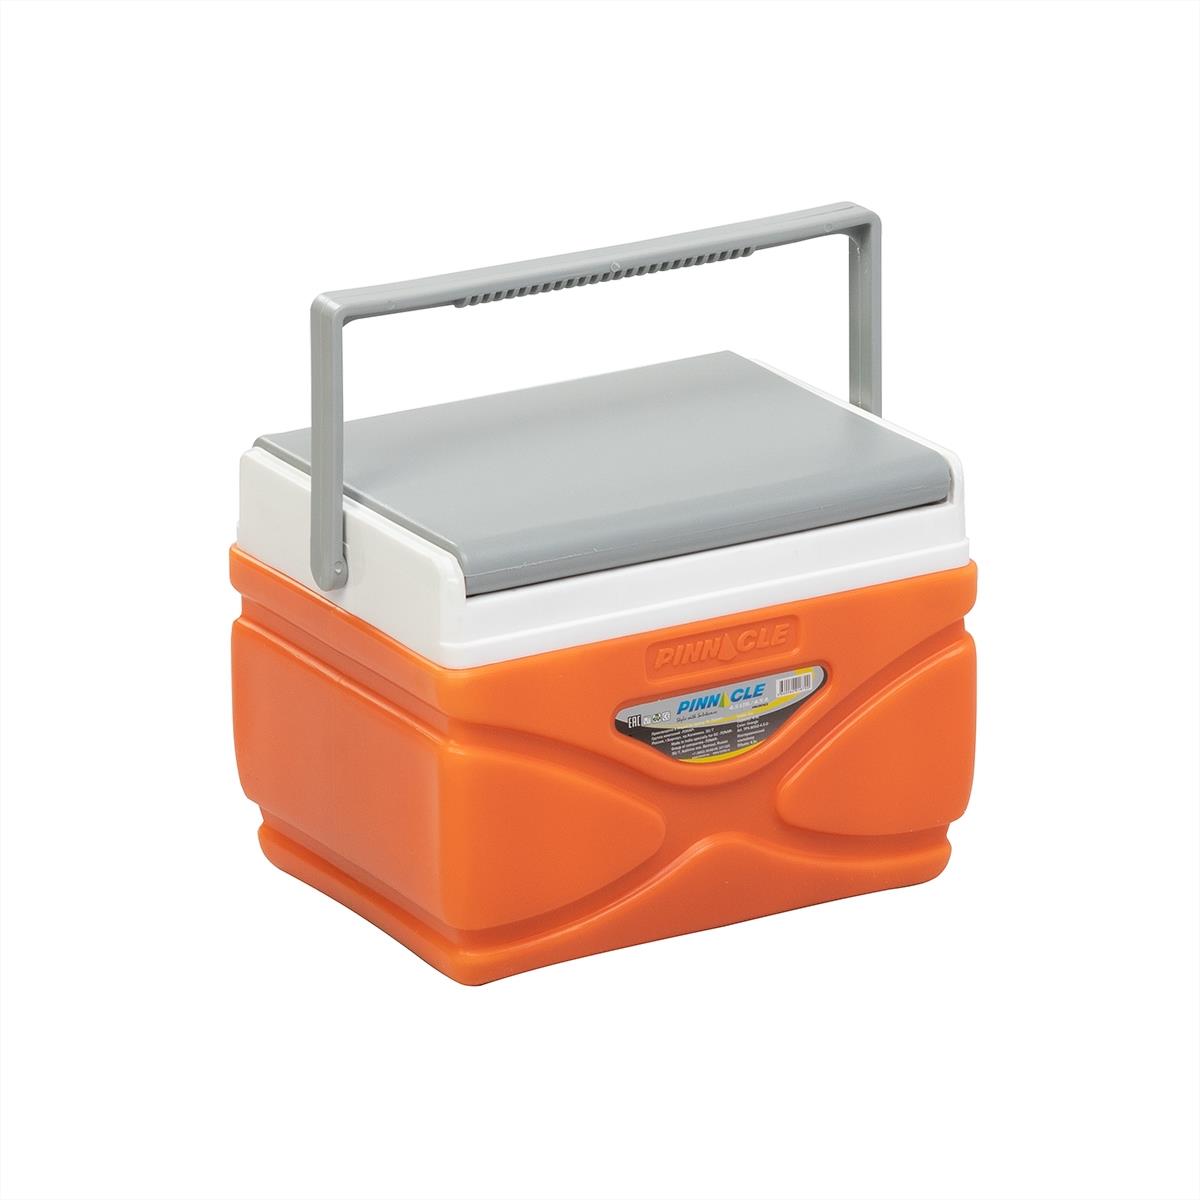 Изотермический контейнер PRUDENCE 4.5 л PINNACLE контейнер для хранения с крышкой и вкладышем 6 5 л оранжевый